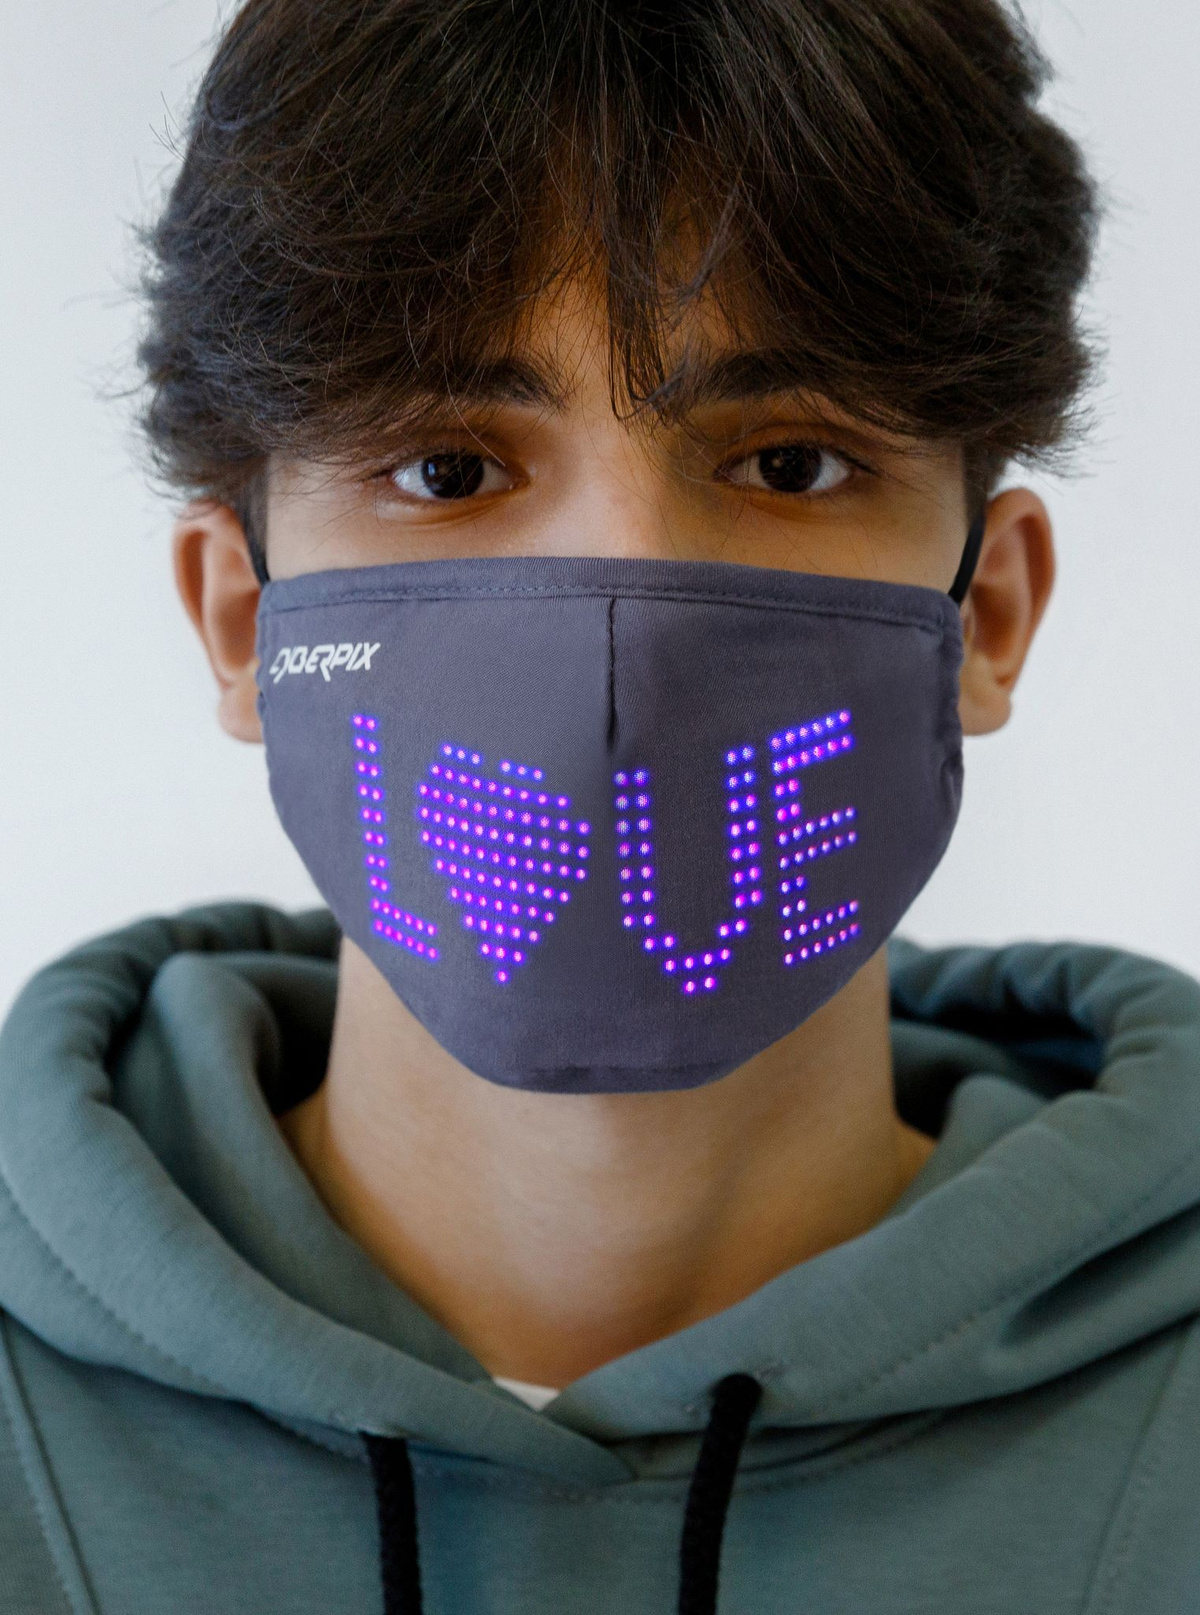 Первая умная маска с LED экраном - Cyber Mask!